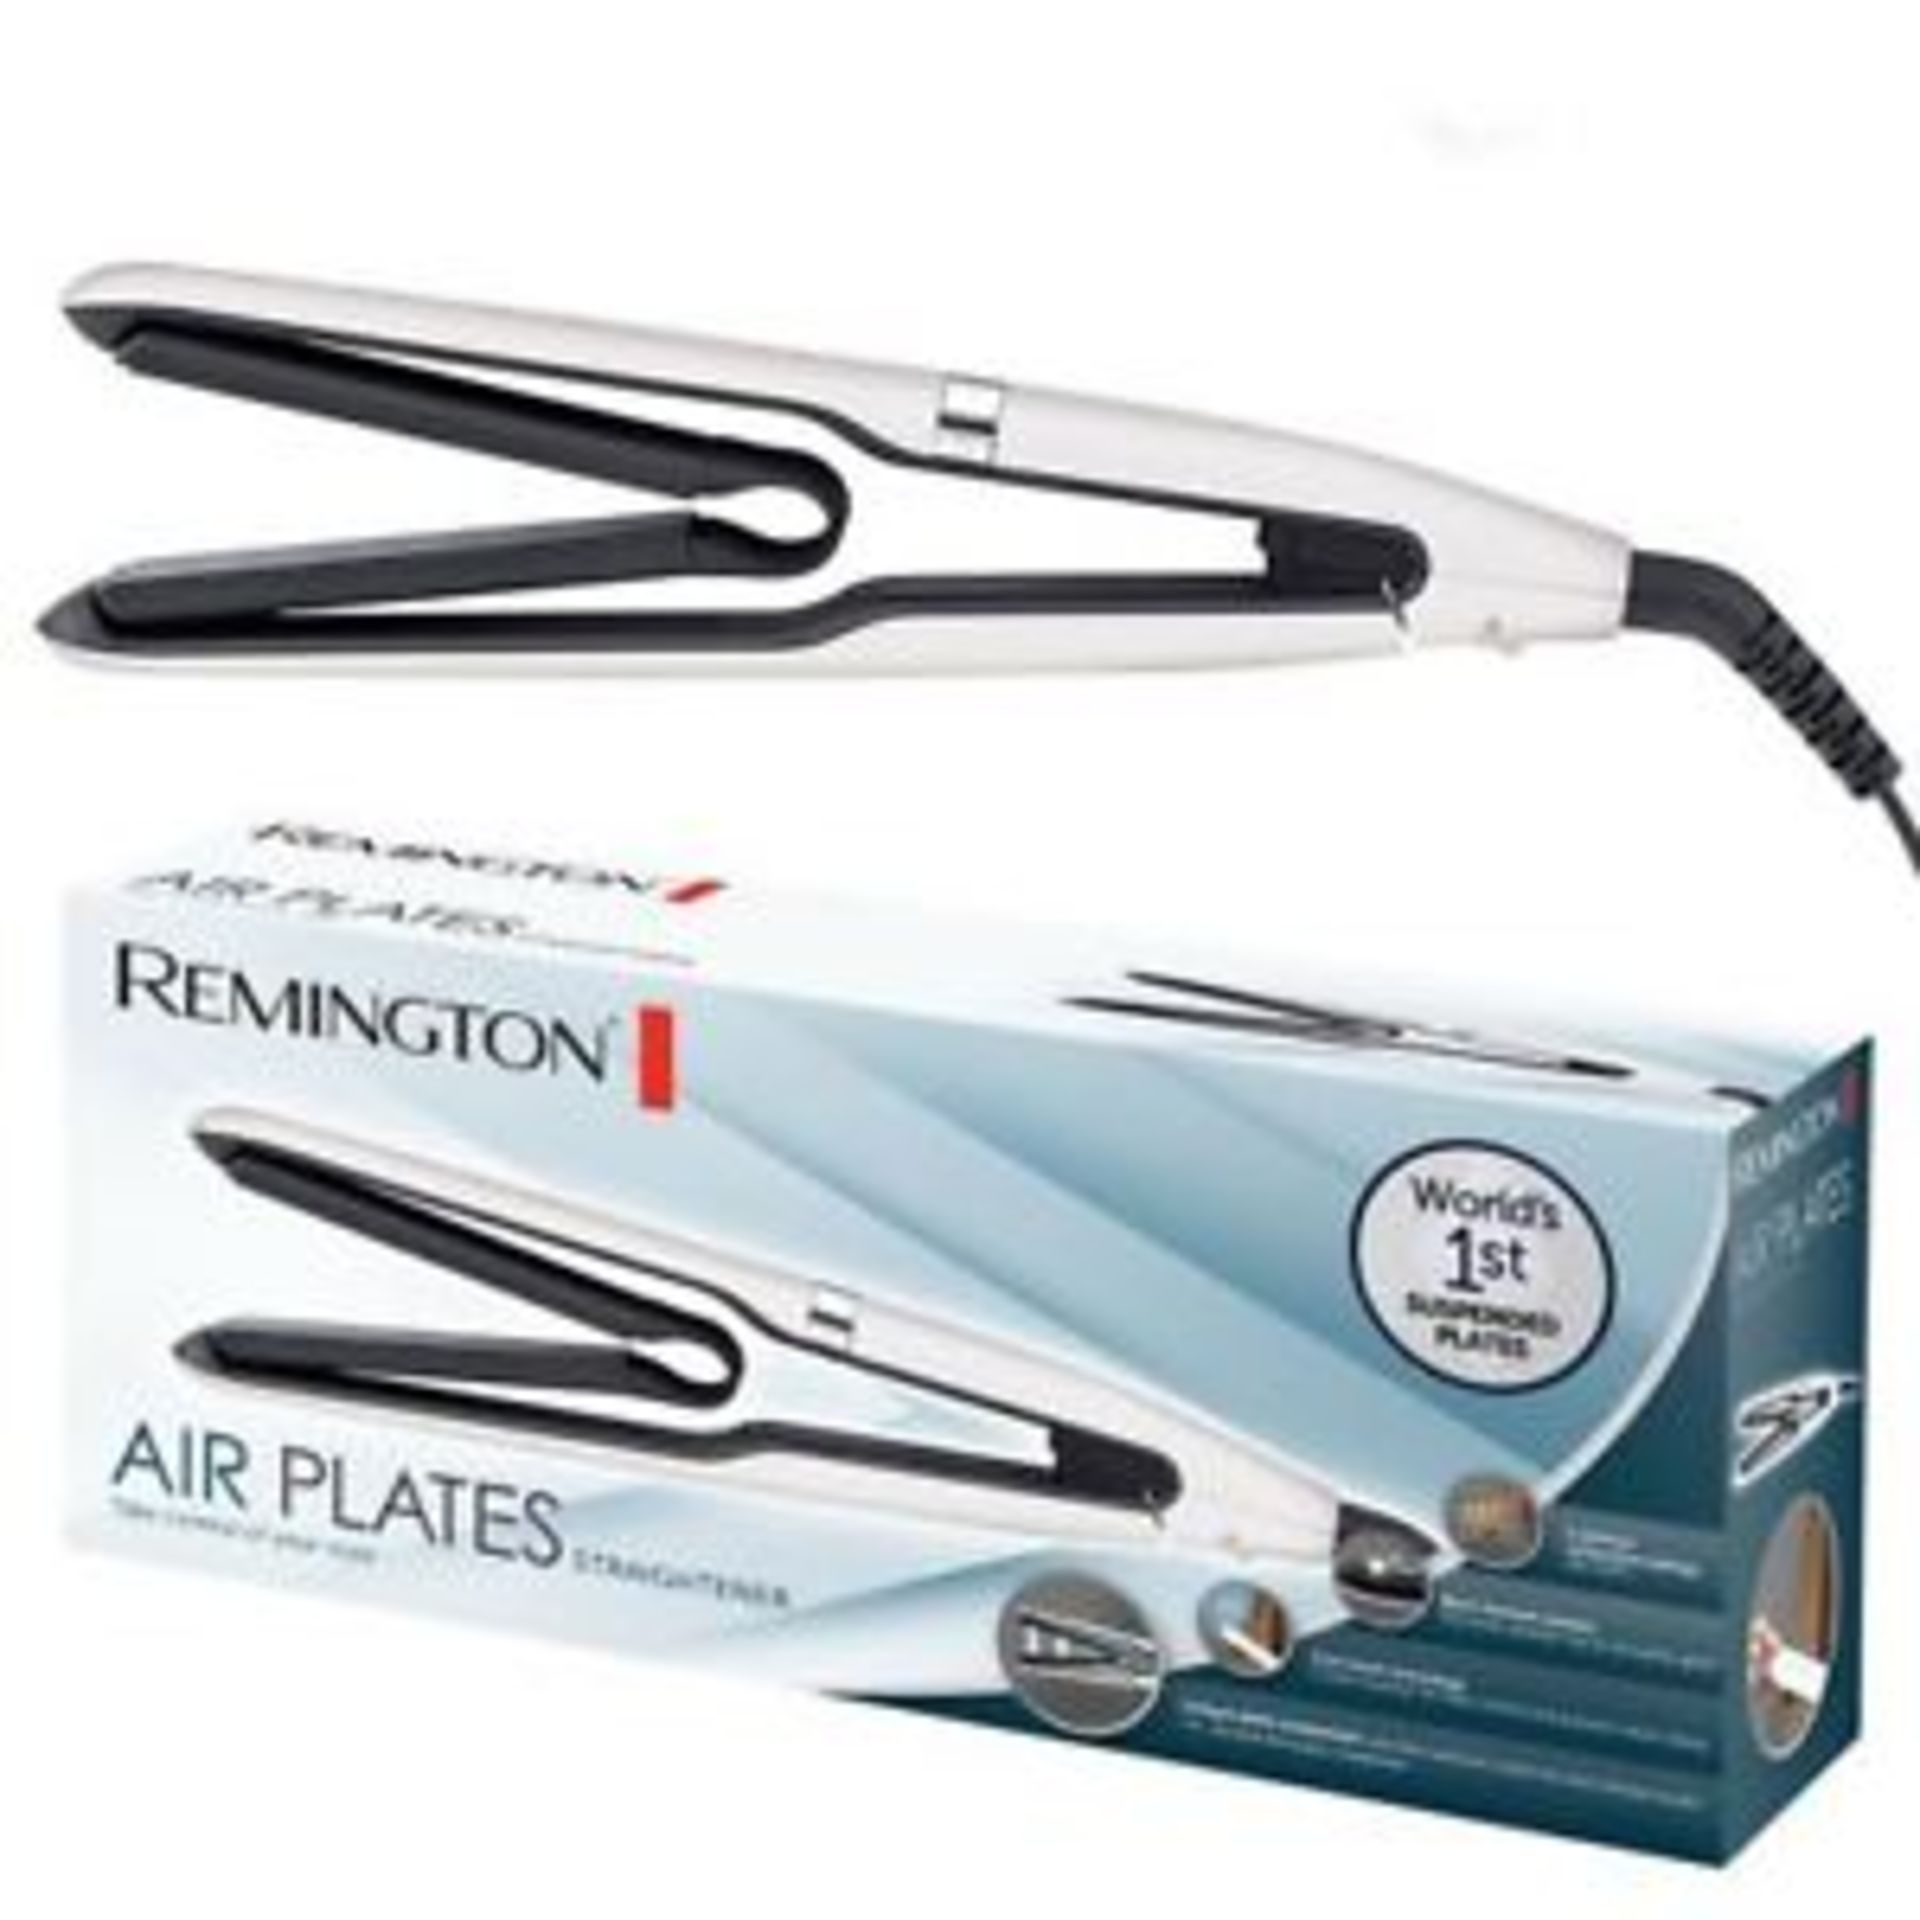 V Brand New Remington Air Plates Straightener - Argos Price £79.99 - 5 Optimum Temperature - Image 3 of 4